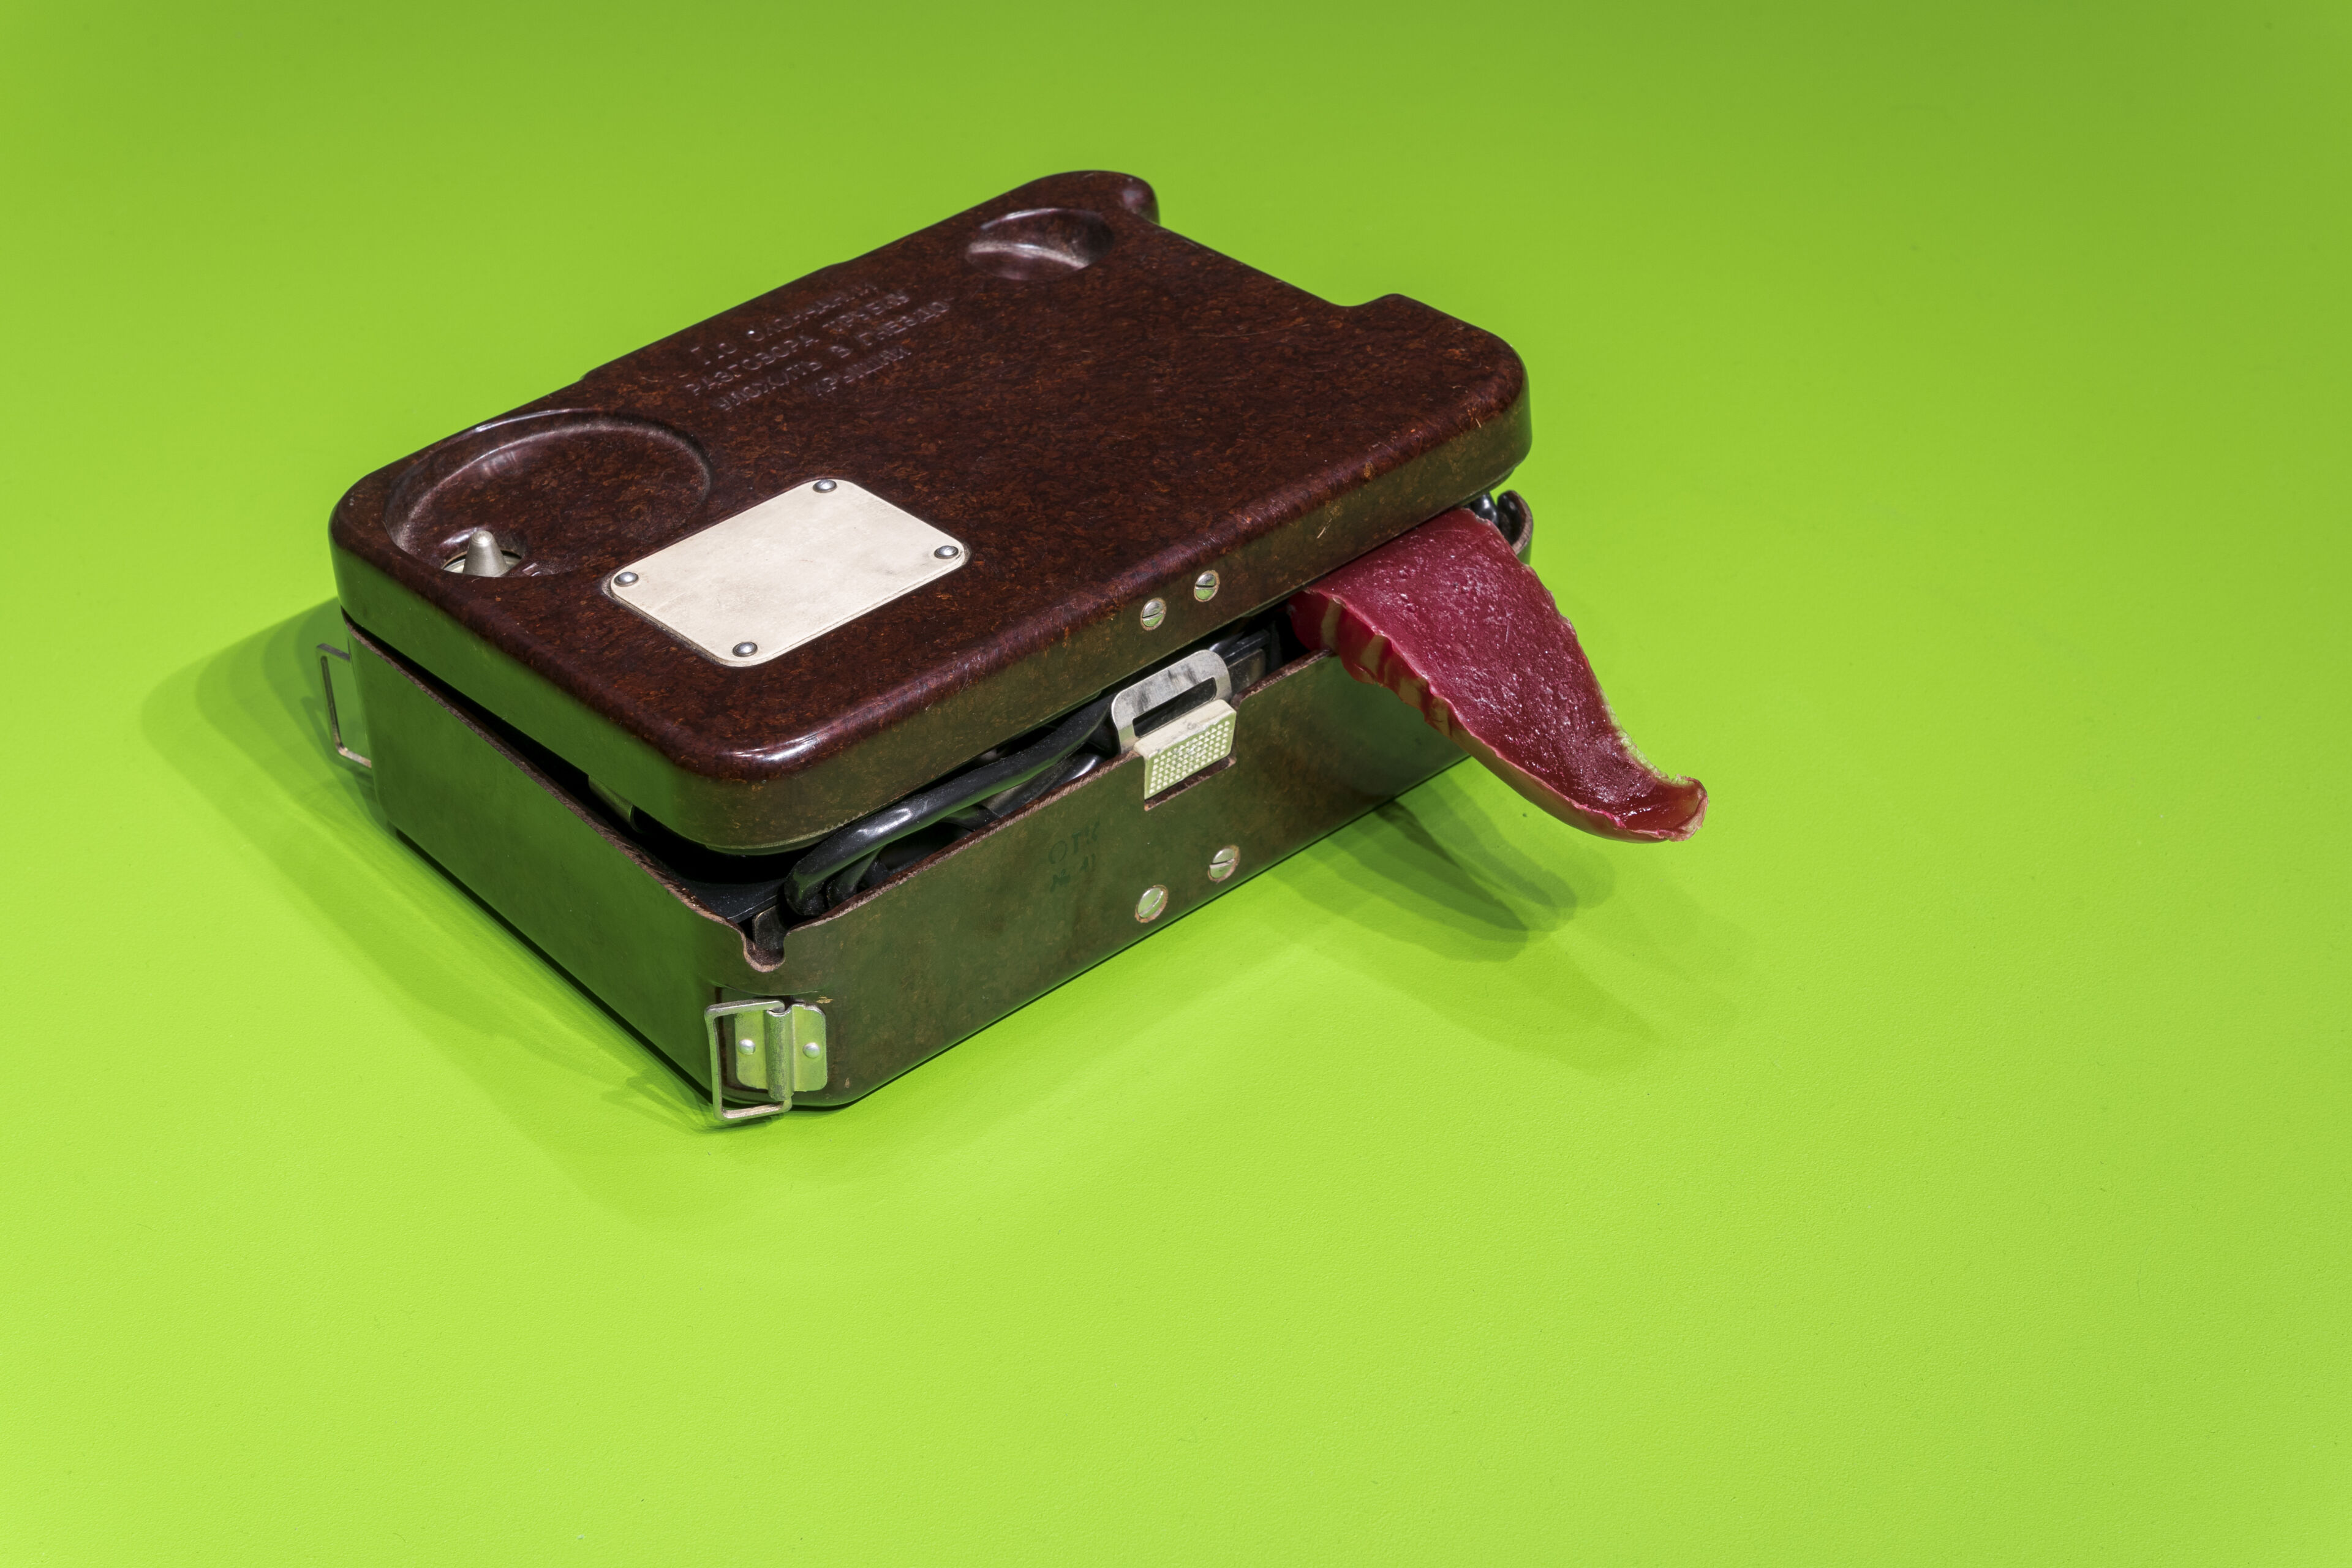 Stara walizka na zielonym tle z wystającym obiektem na kształt języka i z widocznymi kablami w środku.